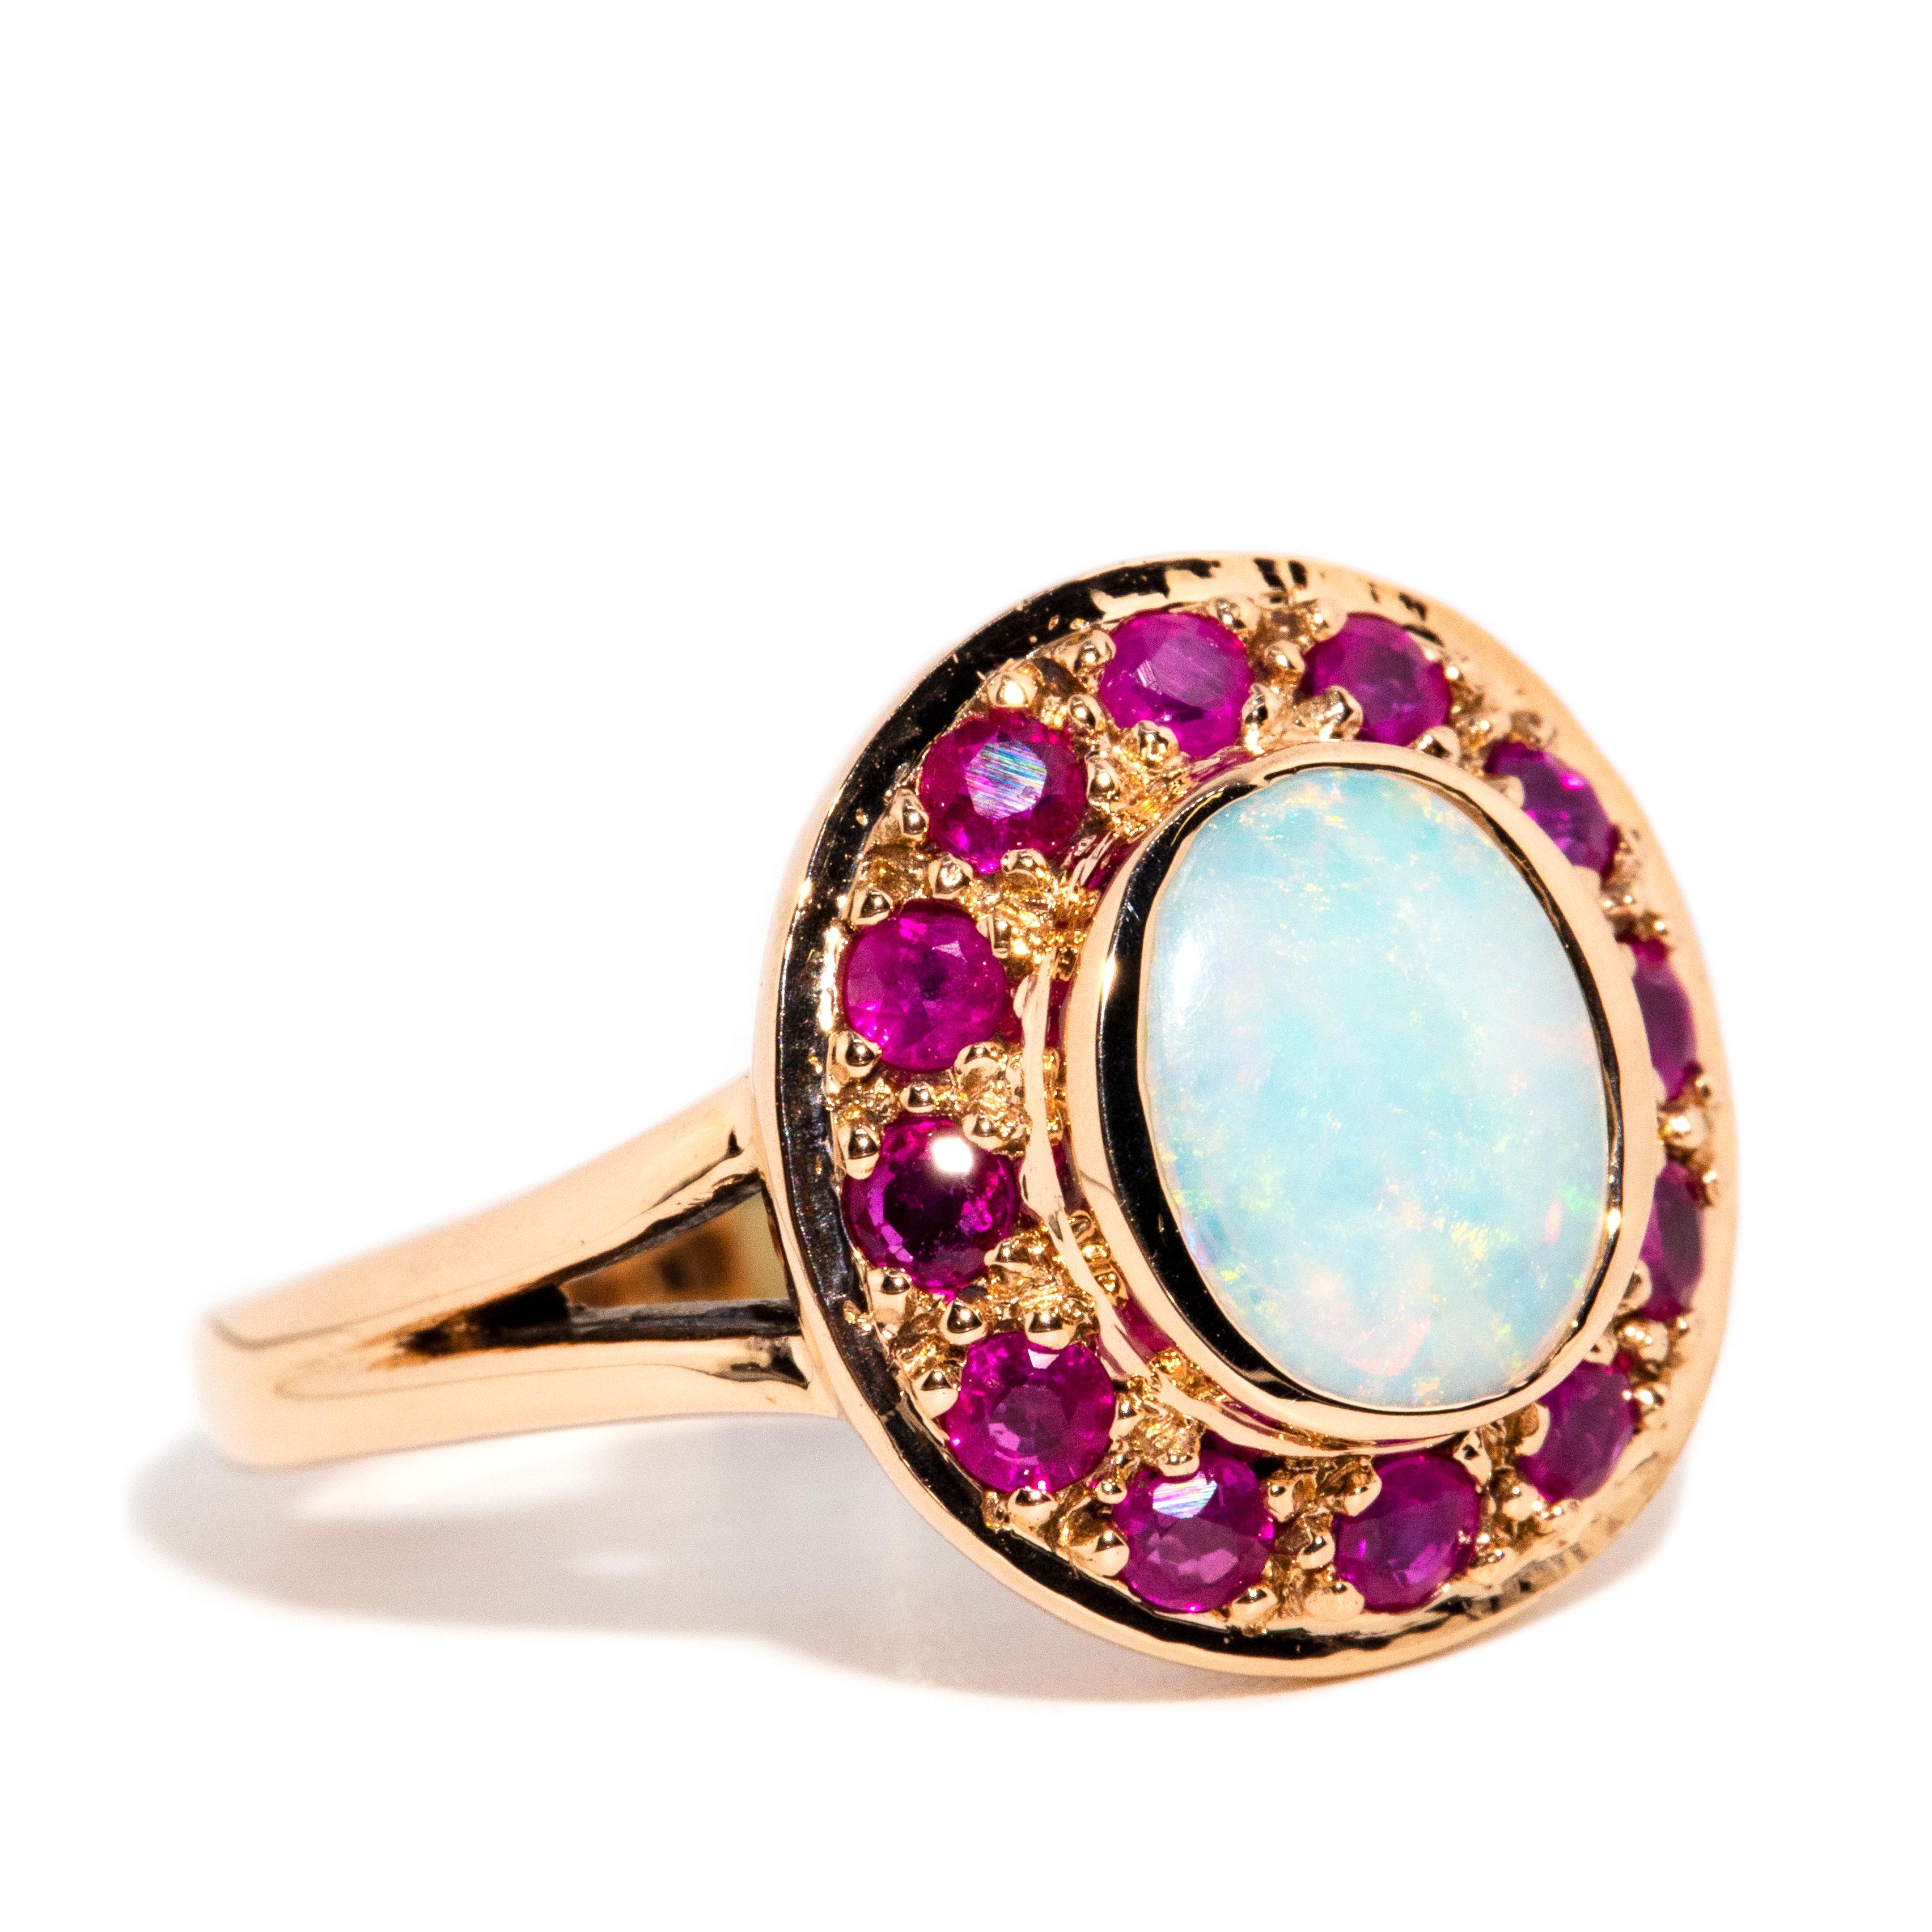 Vintage inspirierter Ring aus 9 Karat Gelbgold mit massivem Opal, Cabochon und lila-rotem Rubin (Zeitgenössisch)